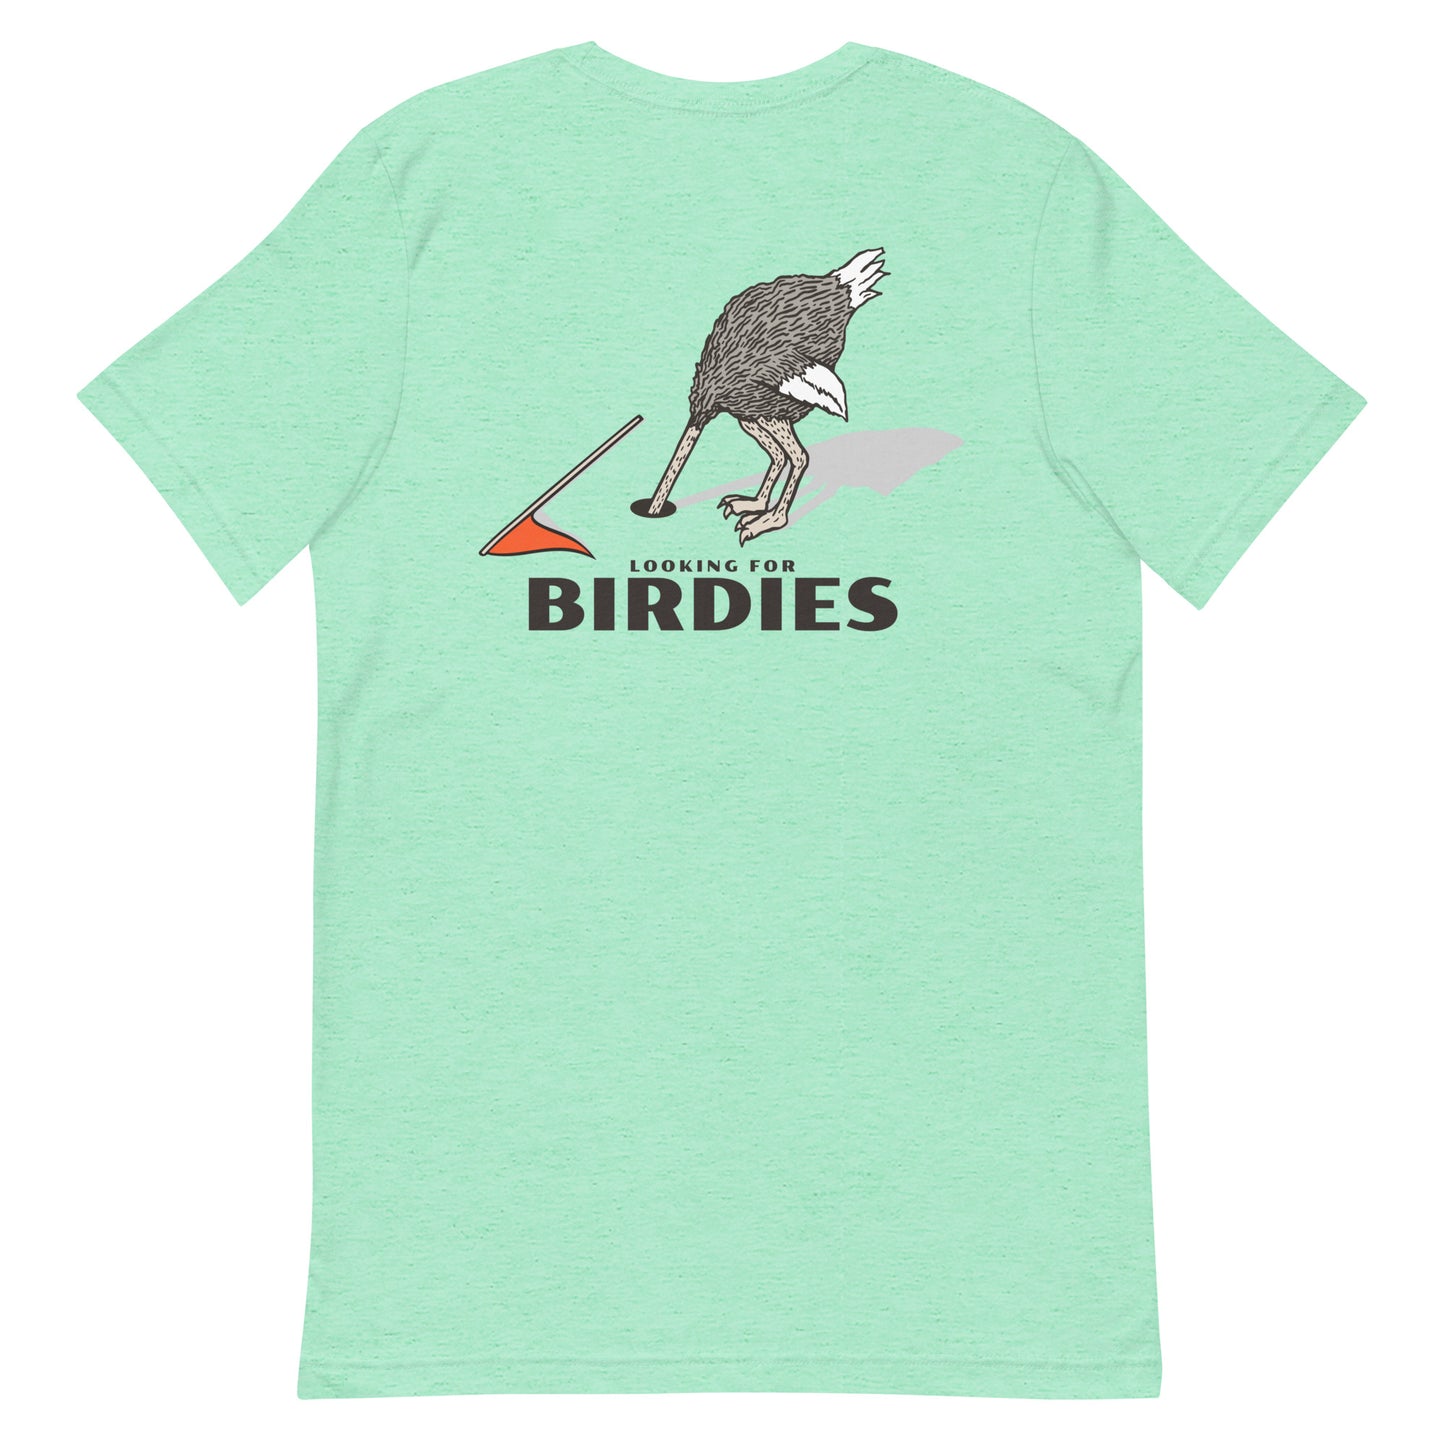 Looking for Birdies